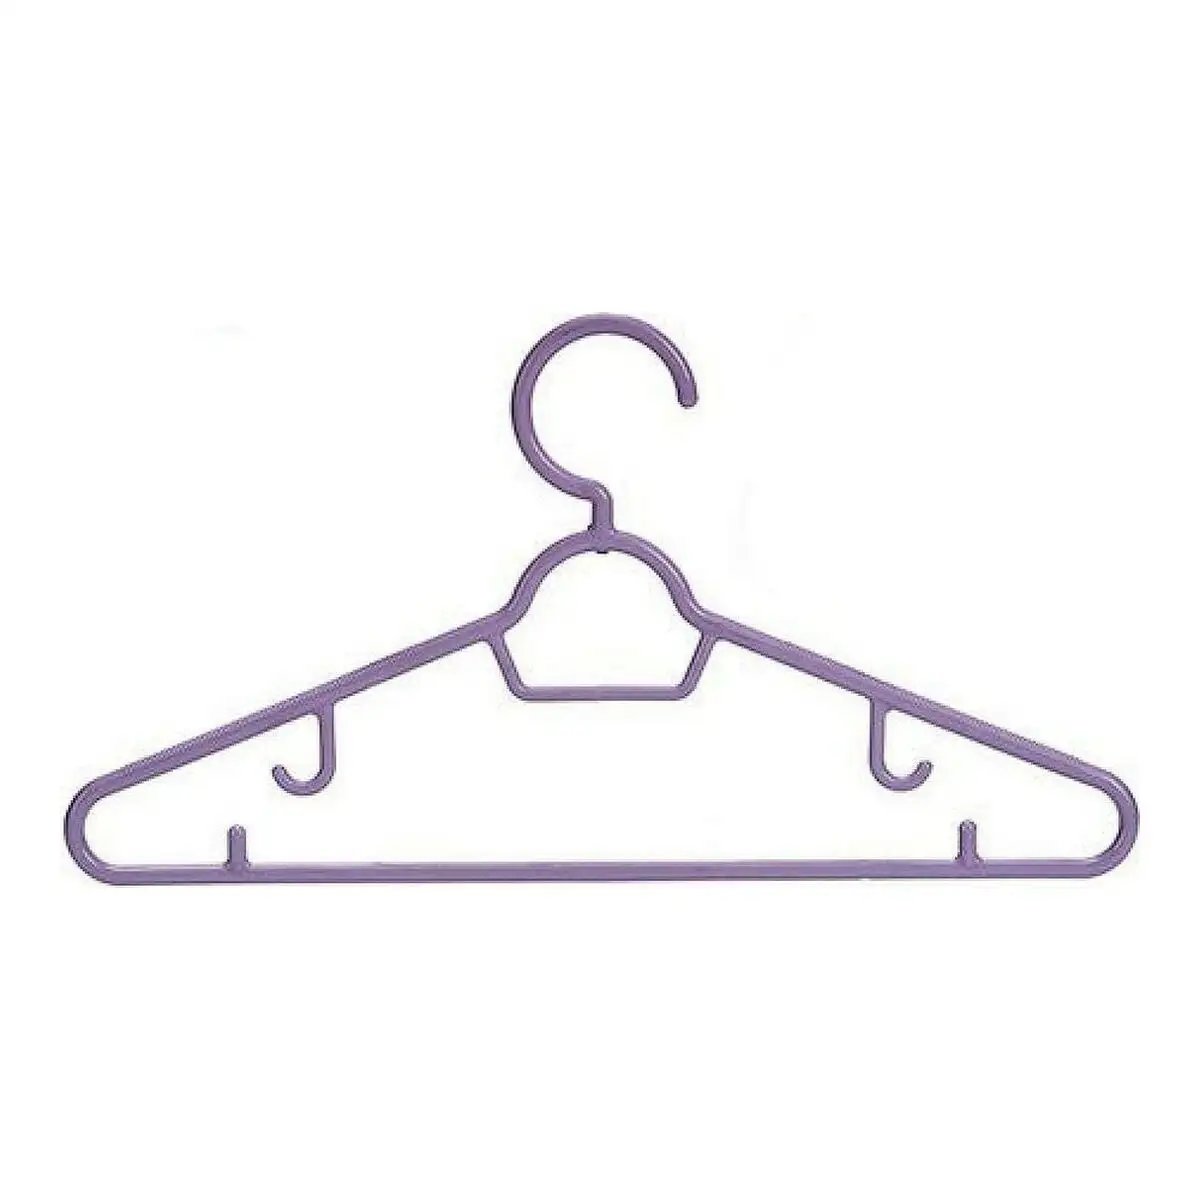 Jeu de porte manteaux violet bleu rose plastique_5258. DIAYTAR SENEGAL - Votre Passage vers le Chic et l'Élégance. Naviguez à travers notre boutique en ligne pour trouver des produits qui ajoutent une touche sophistiquée à votre style.